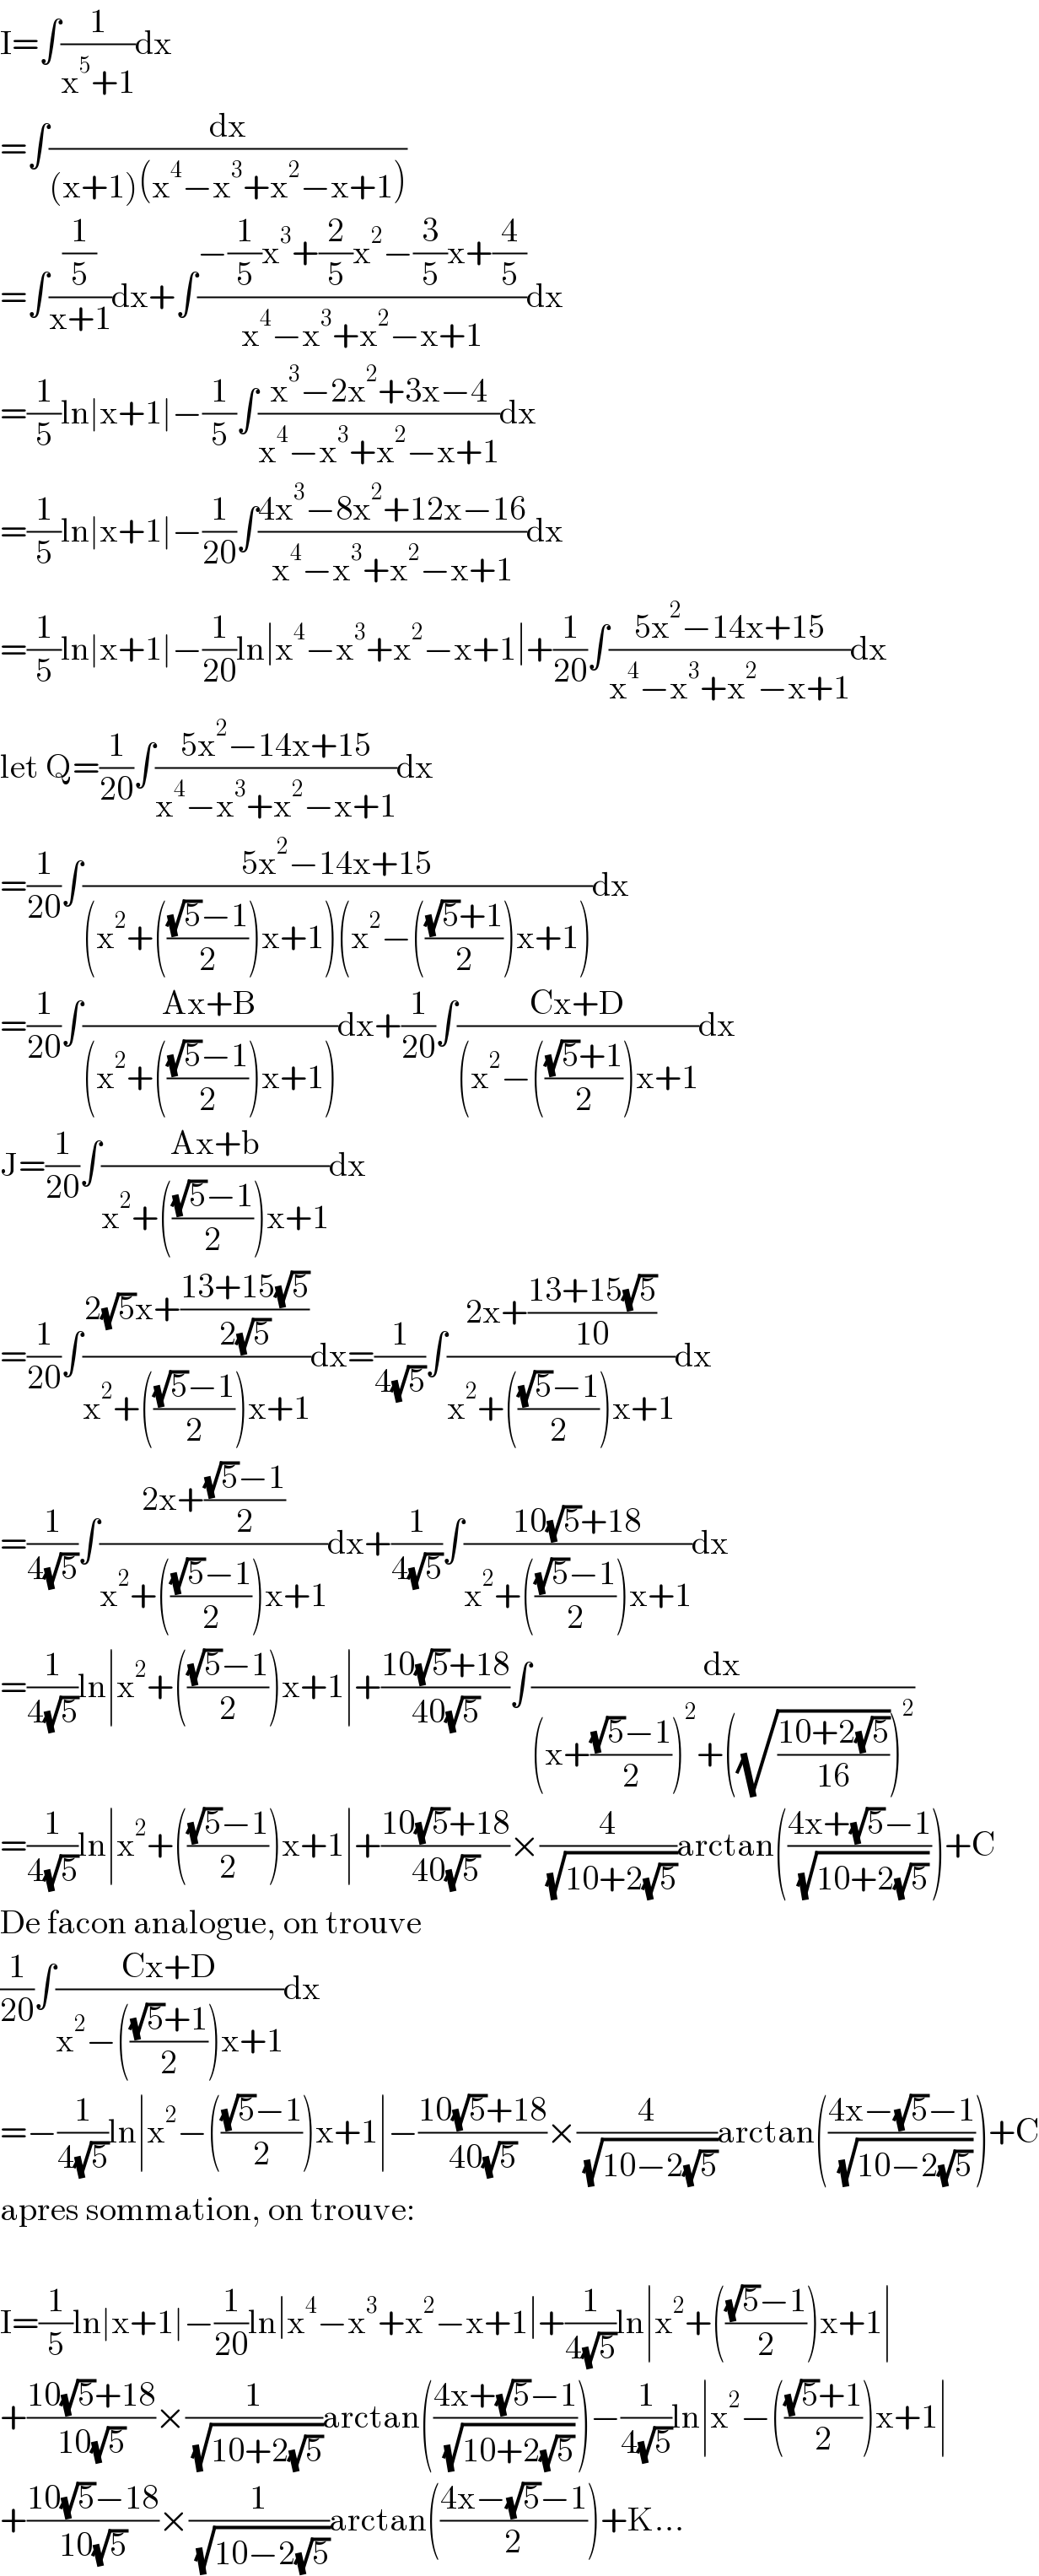 I=∫(1/(x^5 +1))dx  =∫(dx/((x+1)(x^4 −x^3 +x^2 −x+1)))  =∫((1/5)/(x+1))dx+∫((−(1/5)x^3 +(2/5)x^2 −(3/5)x+(4/5))/(x^4 −x^3 +x^2 −x+1))dx  =(1/5)ln∣x+1∣−(1/5)∫((x^3 −2x^2 +3x−4)/(x^4 −x^3 +x^2 −x+1))dx  =(1/5)ln∣x+1∣−(1/(20))∫((4x^3 −8x^2 +12x−16)/(x^4 −x^3 +x^2 −x+1))dx  =(1/5)ln∣x+1∣−(1/(20))ln∣x^4 −x^3 +x^2 −x+1∣+(1/(20))∫((5x^2 −14x+15)/(x^4 −x^3 +x^2 −x+1))dx  let Q=(1/(20))∫((5x^2 −14x+15)/(x^4 −x^3 +x^2 −x+1))dx  =(1/(20))∫((5x^2 −14x+15)/((x^2 +((((√5)−1)/2))x+1)(x^2 −((((√5)+1)/2))x+1)))dx  =(1/(20))∫((Ax+B)/((x^2 +((((√5)−1)/2))x+1)))dx+(1/(20))∫((Cx+D)/((x^2 −((((√5)+1)/2))x+1))dx  J=(1/(20))∫((Ax+b)/(x^2 +((((√5)−1)/2))x+1))dx  =(1/(20))∫((2(√5)x+((13+15(√5))/(2(√5))))/(x^2 +((((√5)−1)/2))x+1))dx=(1/(4(√5)))∫((2x+((13+15(√5))/(10)))/(x^2 +((((√5)−1)/2))x+1))dx  =(1/(4(√5)))∫((2x+(((√5)−1)/2))/(x^2 +((((√5)−1)/2))x+1))dx+(1/(4(√5)))∫((10(√5)+18)/(x^2 +((((√5)−1)/2))x+1))dx  =(1/(4(√5)))ln∣x^2 +((((√5)−1)/2))x+1∣+((10(√5)+18)/(40(√5)))∫(dx/((x+(((√5)−1)/2))^2 +((√((10+2(√5))/(16))))^2 ))  =(1/(4(√5)))ln∣x^2 +((((√5)−1)/2))x+1∣+((10(√5)+18)/(40(√5)))×(4/( (√(10+2(√5)))))arctan(((4x+(√5)−1)/( (√(10+2(√5))))))+C  De facon analogue, on trouve   (1/(20))∫((Cx+D)/(x^2 −((((√5)+1)/2))x+1))dx  =−(1/(4(√5)))ln∣x^2 −((((√5)−1)/2))x+1∣−((10(√5)+18)/(40(√5)))×(4/( (√(10−2(√5)))))arctan(((4x−(√5)−1)/( (√(10−2(√5))))))+C  apres sommation, on trouve:    I=(1/5)ln∣x+1∣−(1/(20))ln∣x^4 −x^3 +x^2 −x+1∣+(1/(4(√5)))ln∣x^2 +((((√5)−1)/2))x+1∣  +((10(√5)+18)/(10(√5)))×(1/( (√(10+2(√5)))))arctan(((4x+(√5)−1)/( (√(10+2(√5))))))−(1/(4(√5)))ln∣x^2 −((((√5)+1)/2))x+1∣  +((10(√5)−18)/(10(√5)))×(1/( (√(10−2(√5)))))arctan(((4x−(√5)−1)/2))+K...  